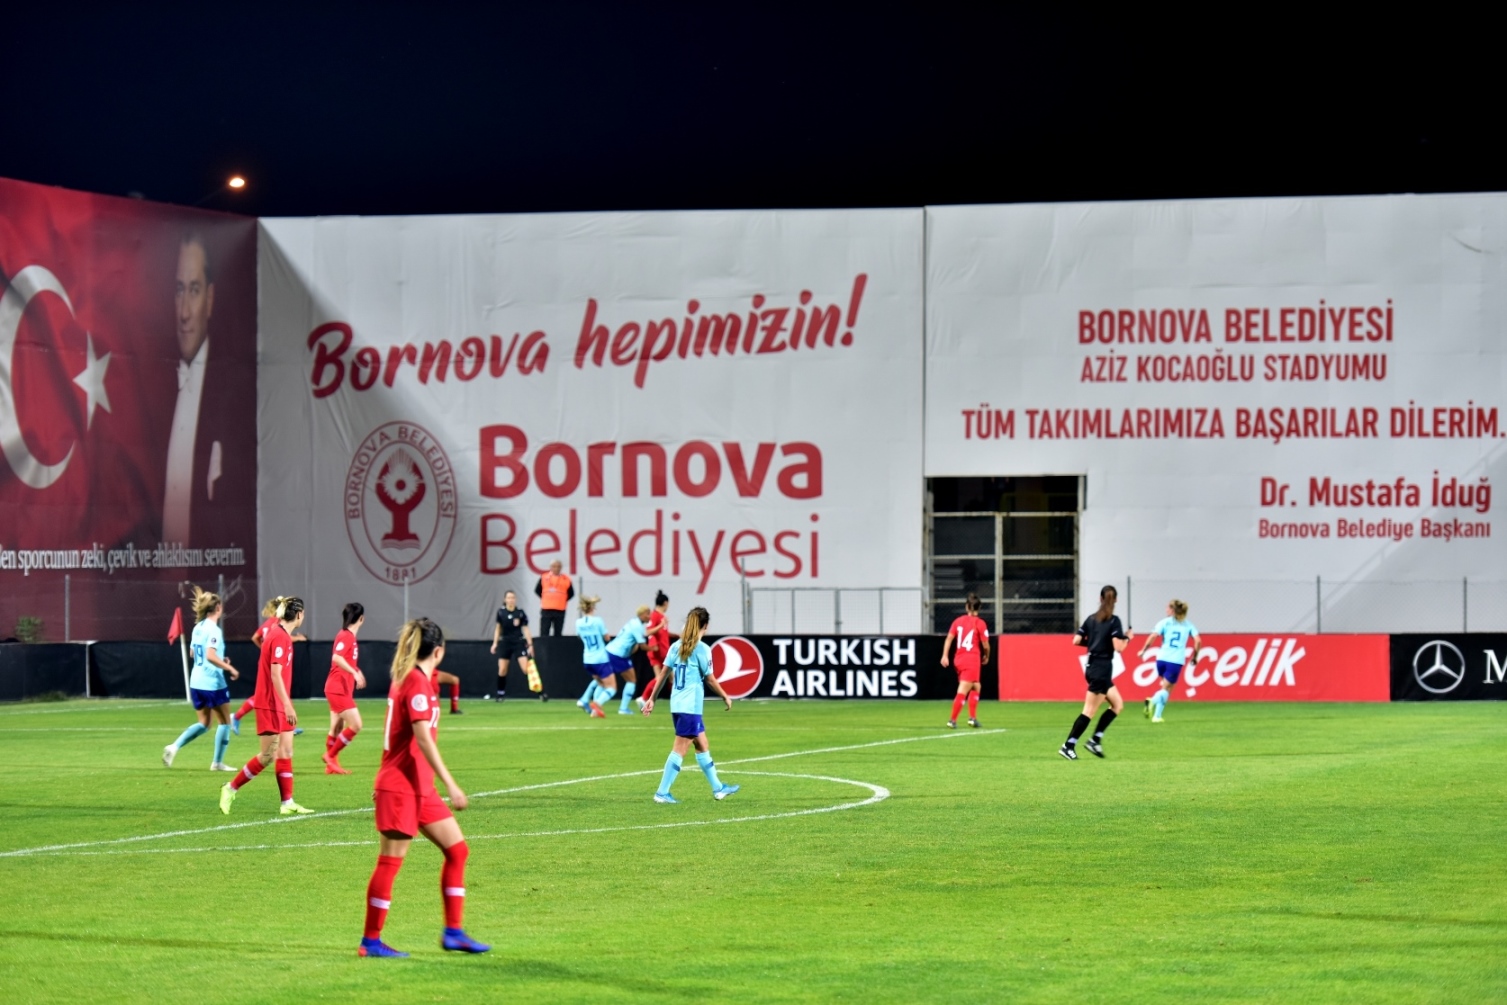 Bornova Stadı’nda ilk milli maç heyecanı